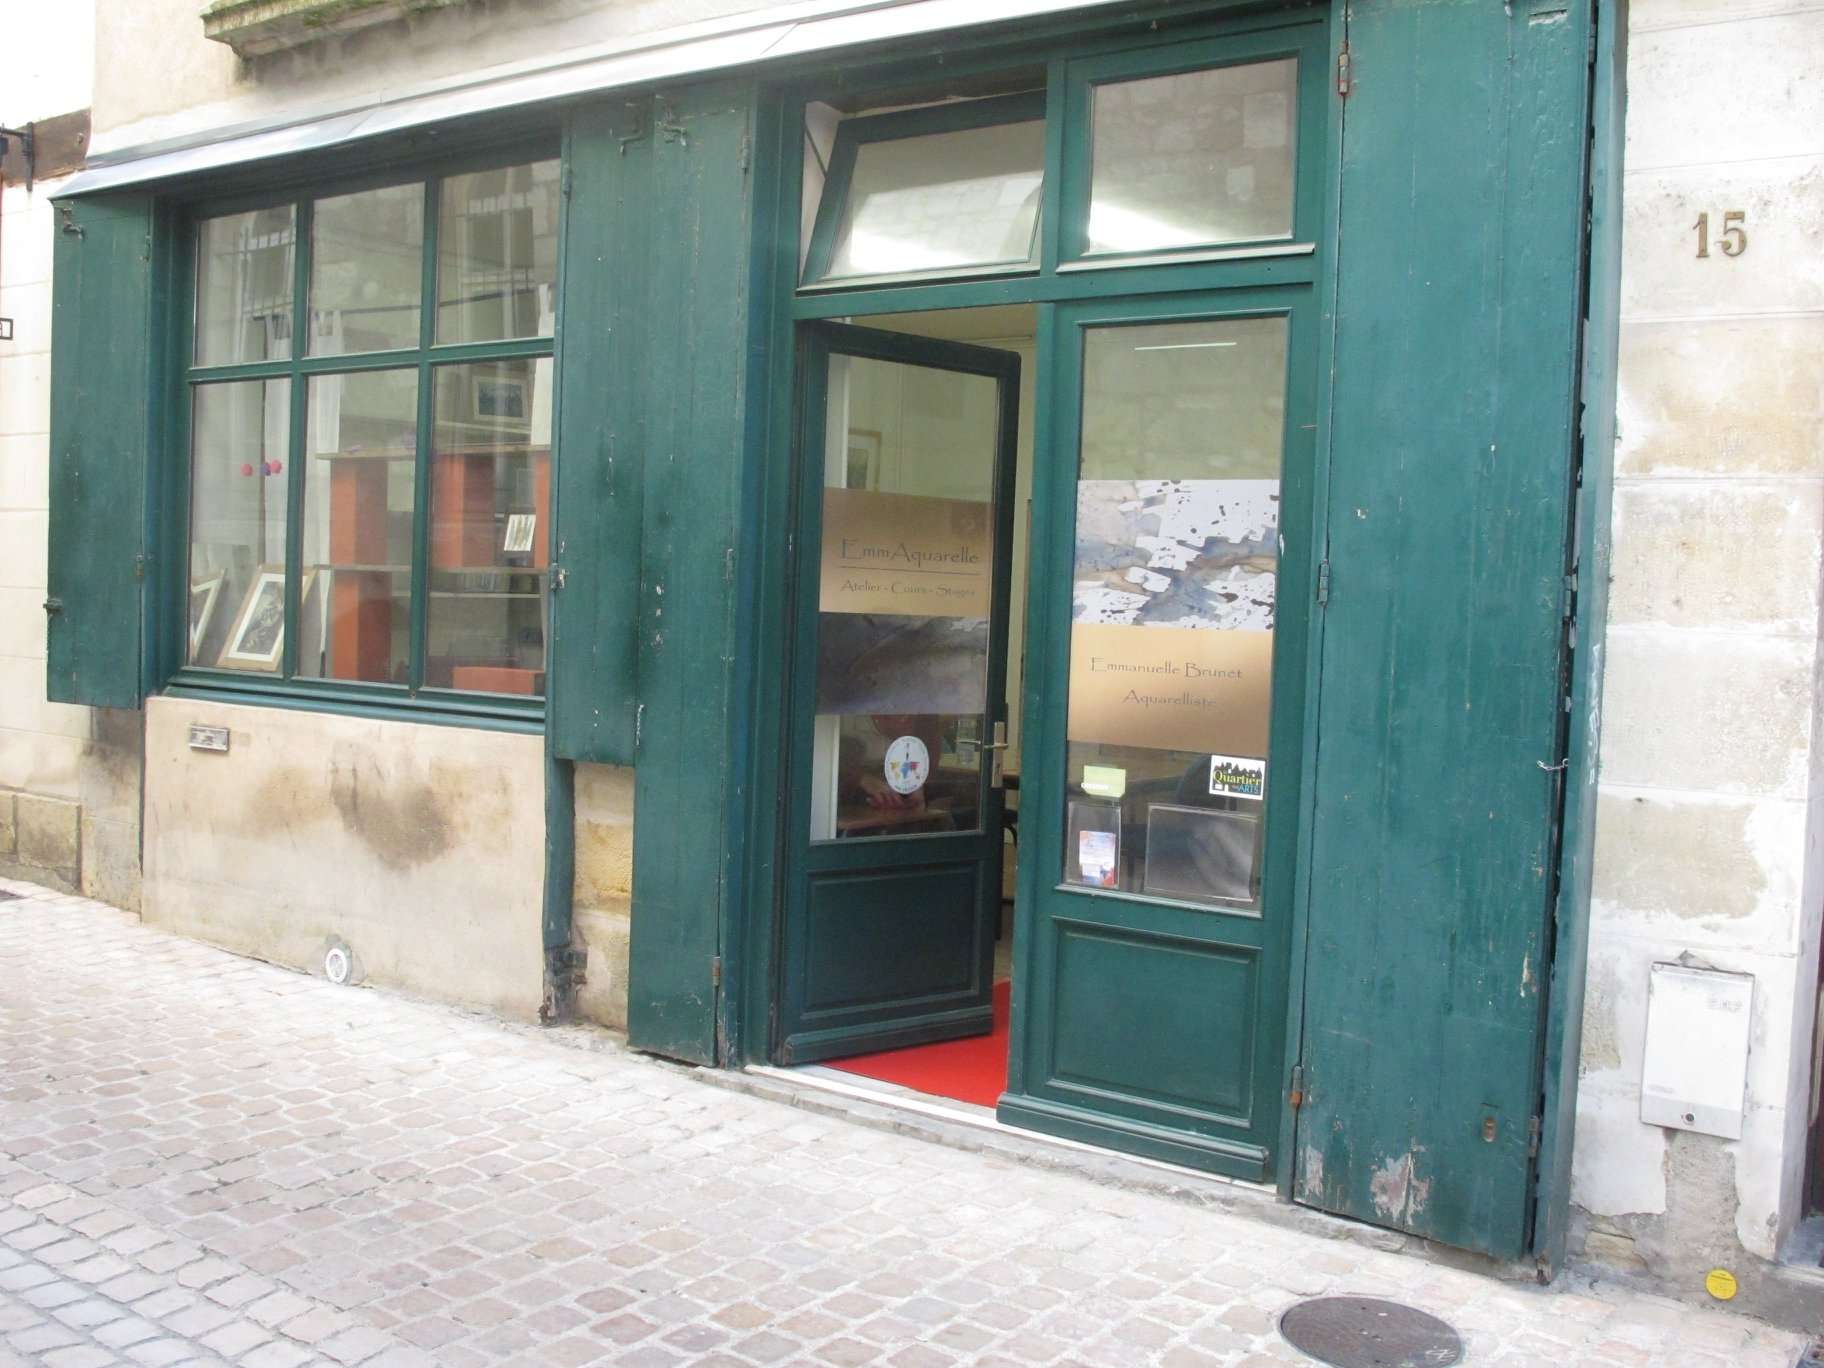 Atelier EmmAquarelle, cours et stages d'aquarelle, 17 rue du Petit Saint-Martin, Tours.